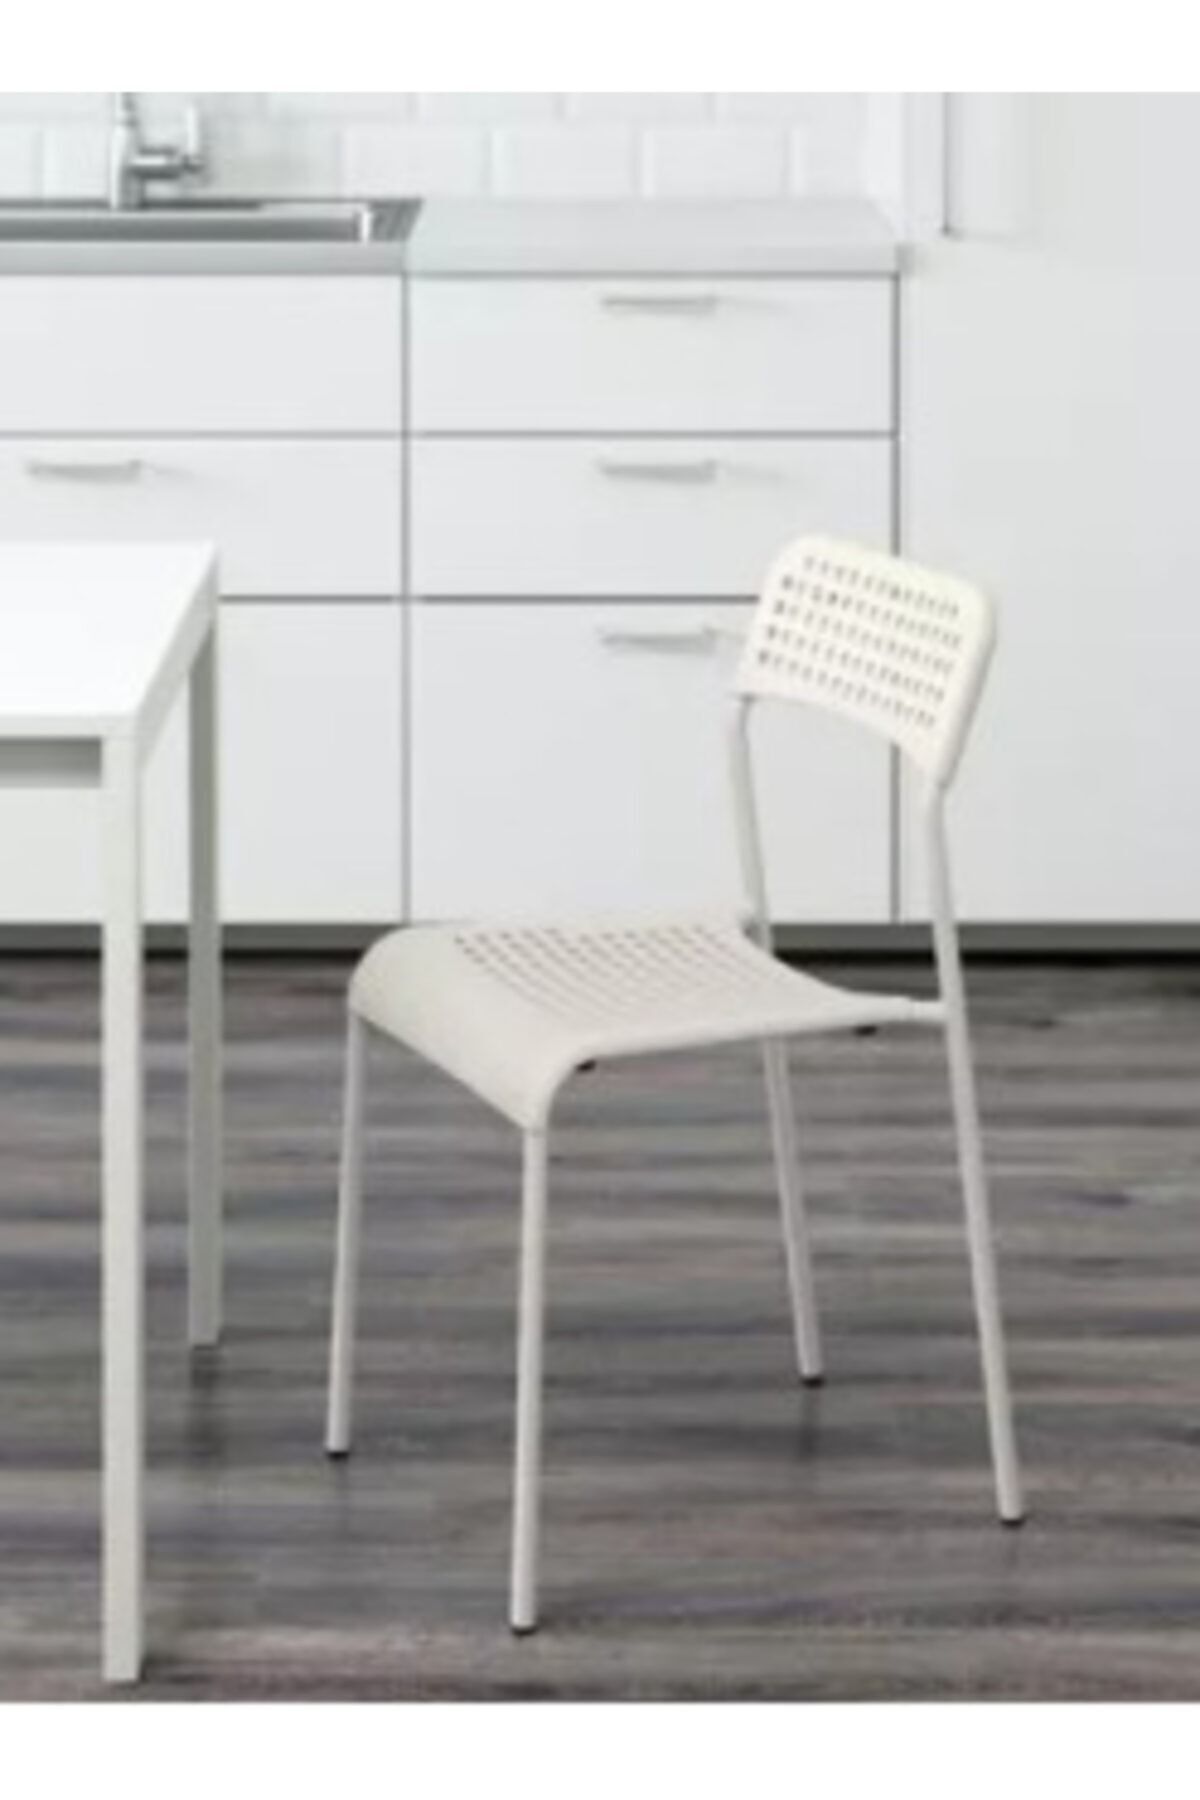 IKEA Beyaz Adde Sandalye Polyester Plastik 1 Belirtilmemiş Sandalye